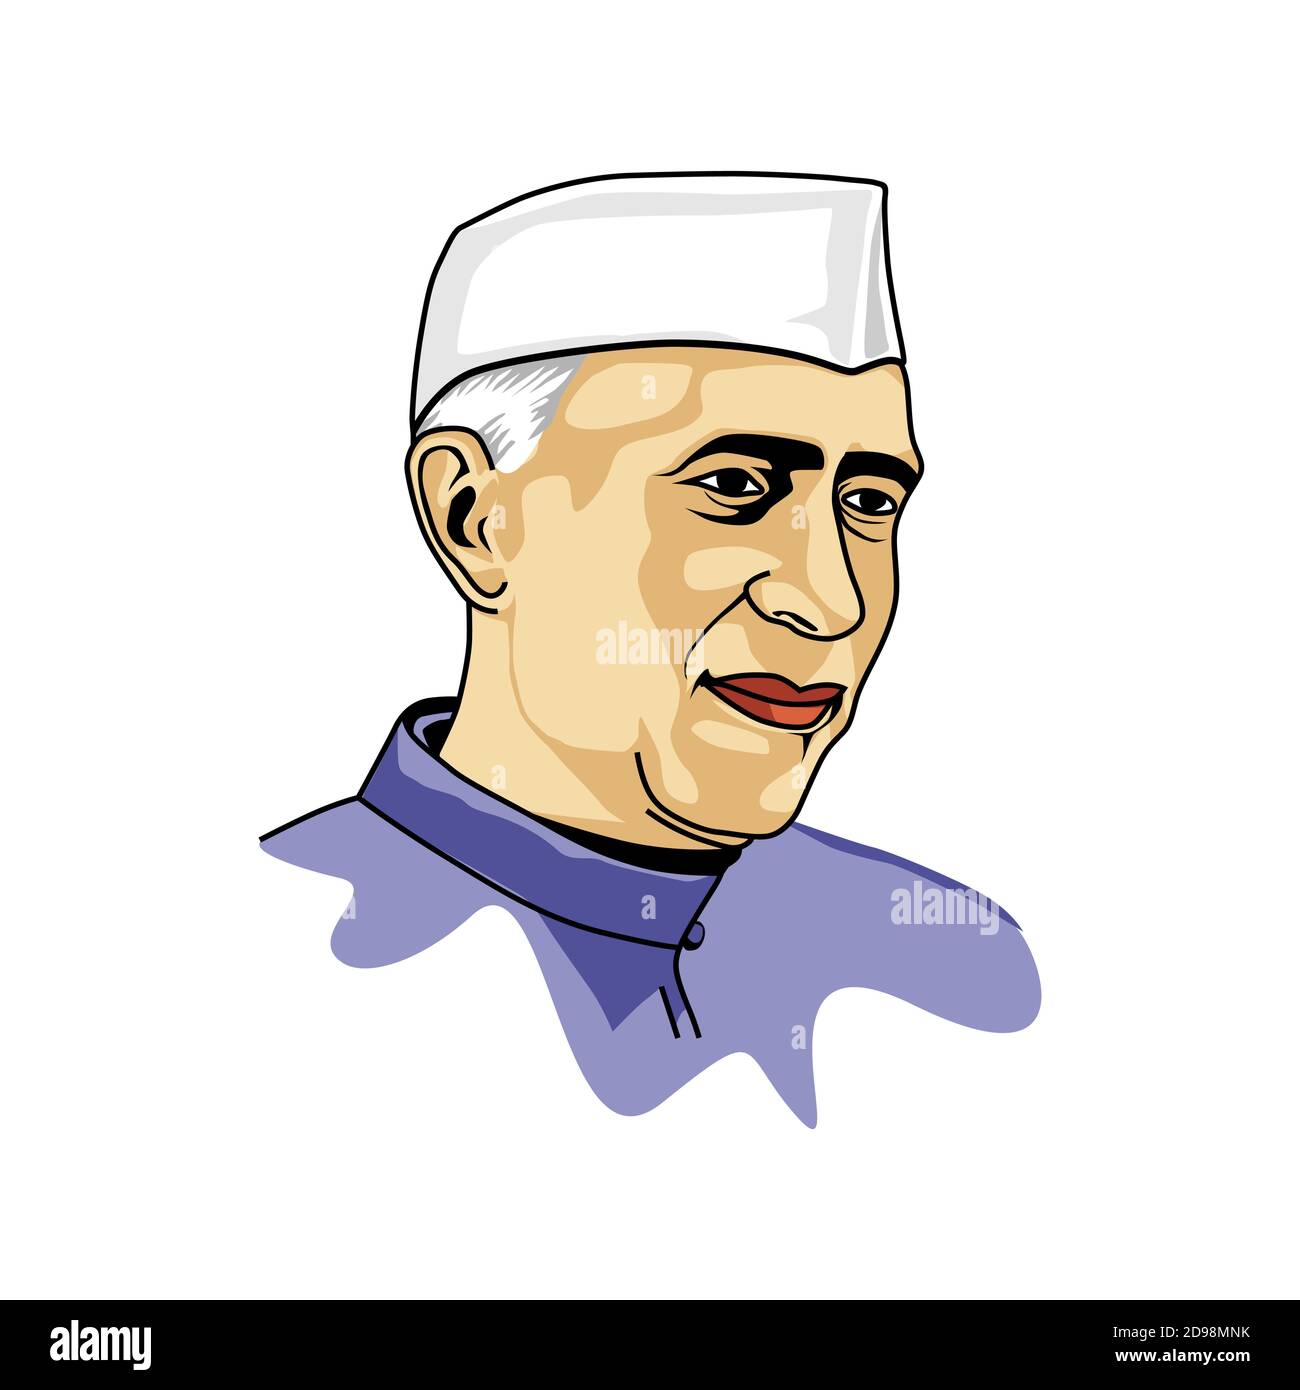 L'awaharlal Nehru era un attivista indiano dell'indipendenza e, successivamente, il primo primo primo ministro dell'India, nonché una figura centrale dei politi indiani Illustrazione Vettoriale